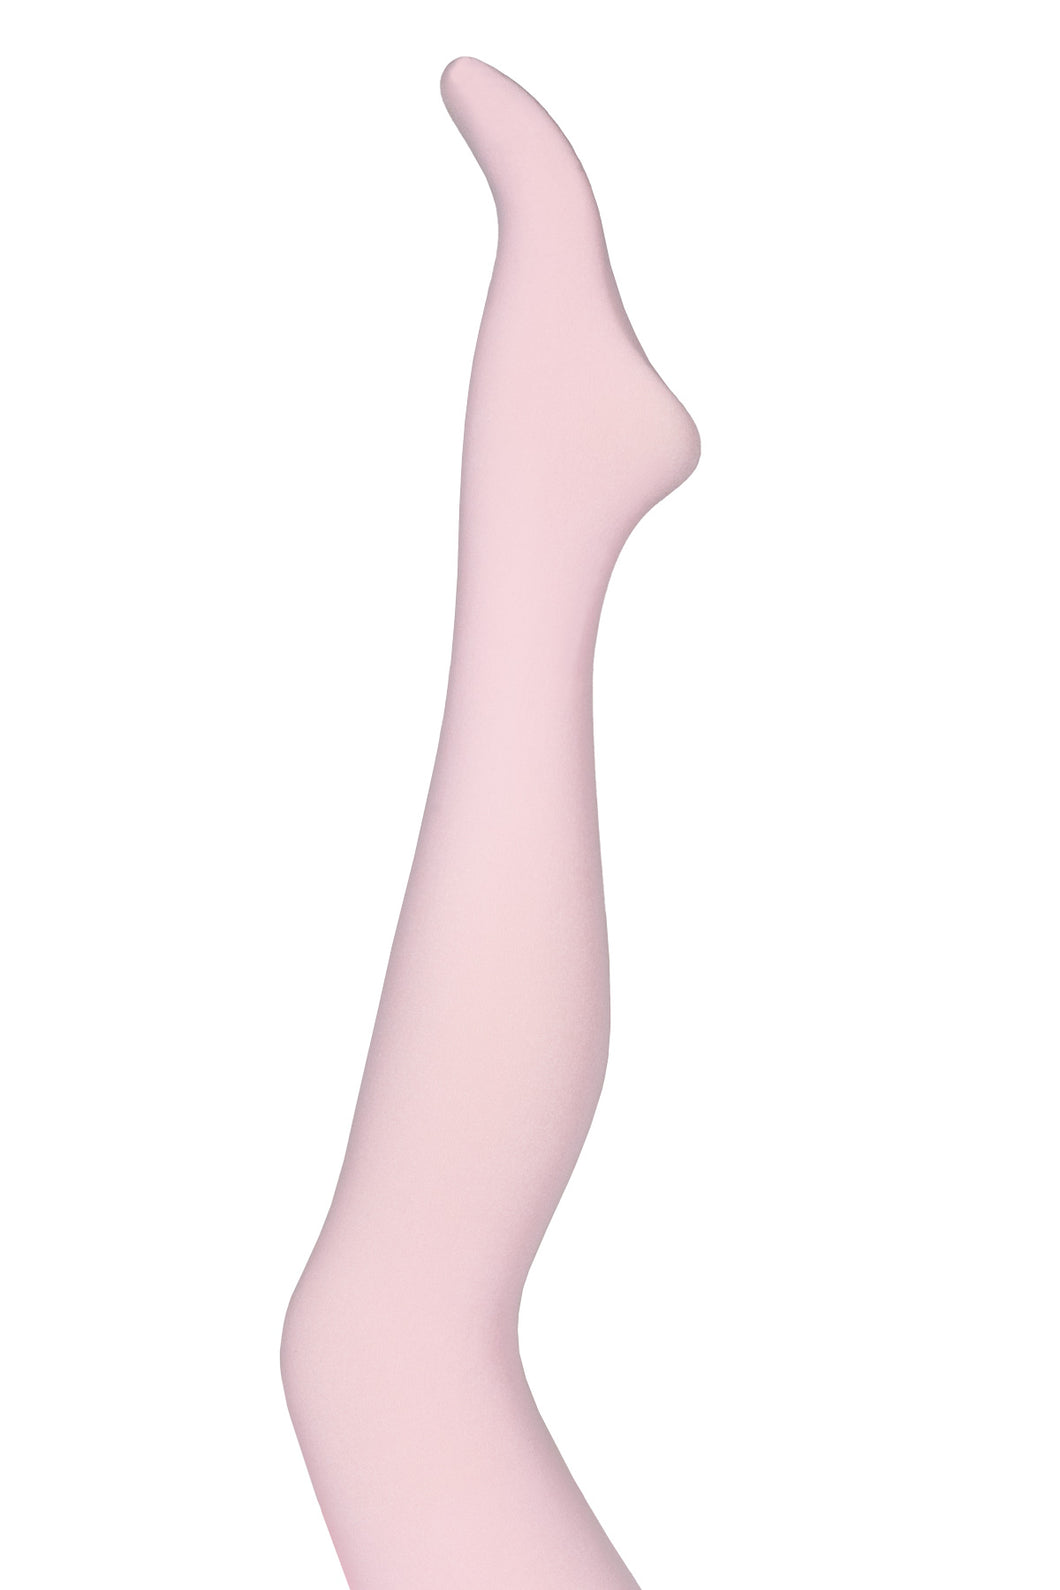 Verdens beste og kuleste strømpebukser i kraftig rosa spandex onesize